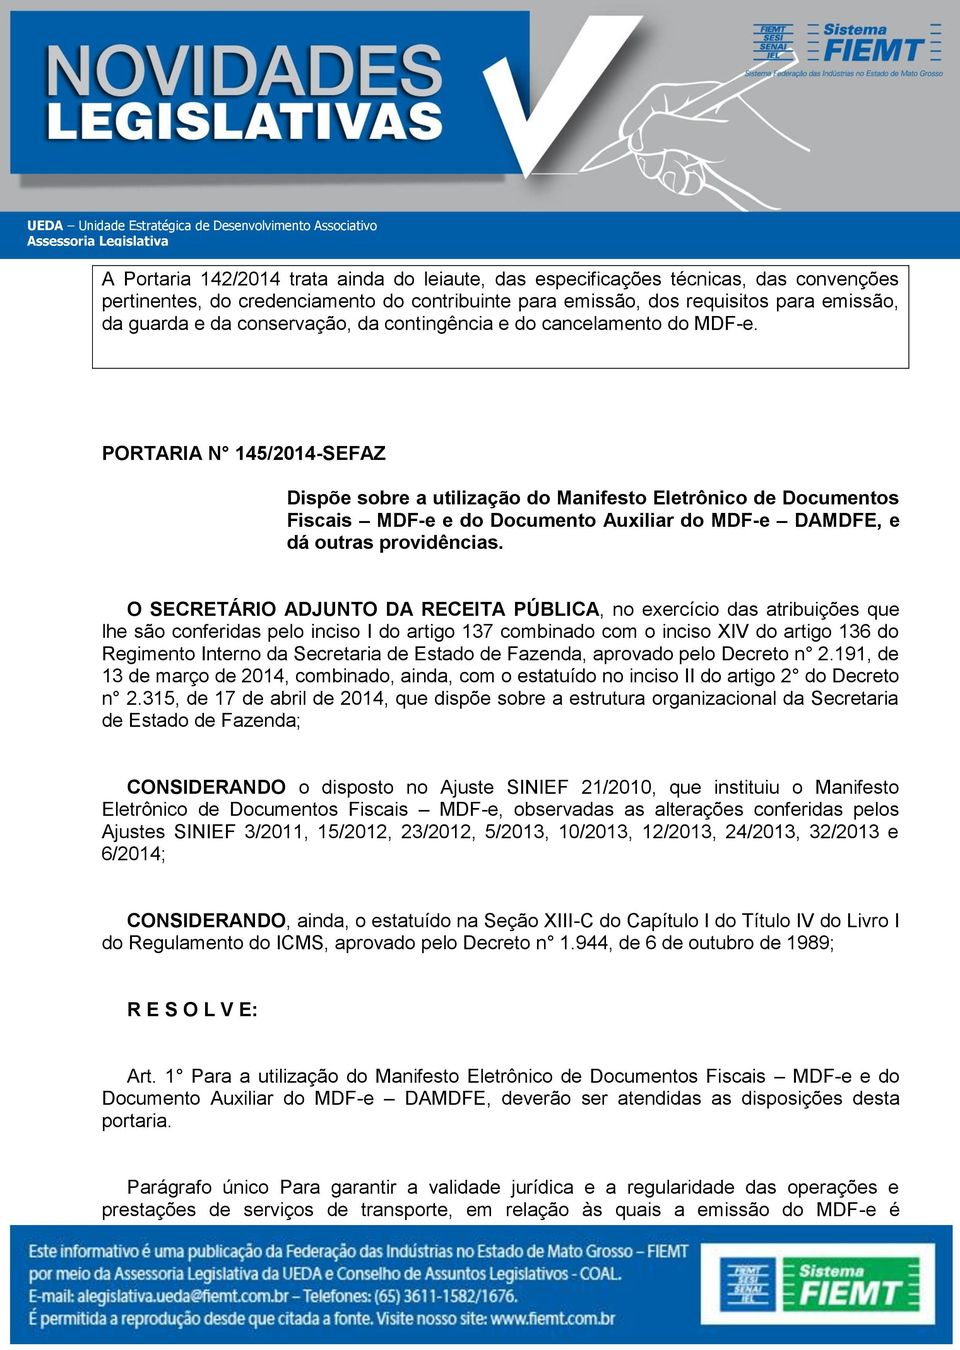 PORTARIA N 145/2014-SEFAZ Dispõe sobre a utilização do Manifesto Eletrônico de Documentos Fiscais MDF-e e do Documento Auxiliar do MDF-e DAMDFE, e dá outras providências.